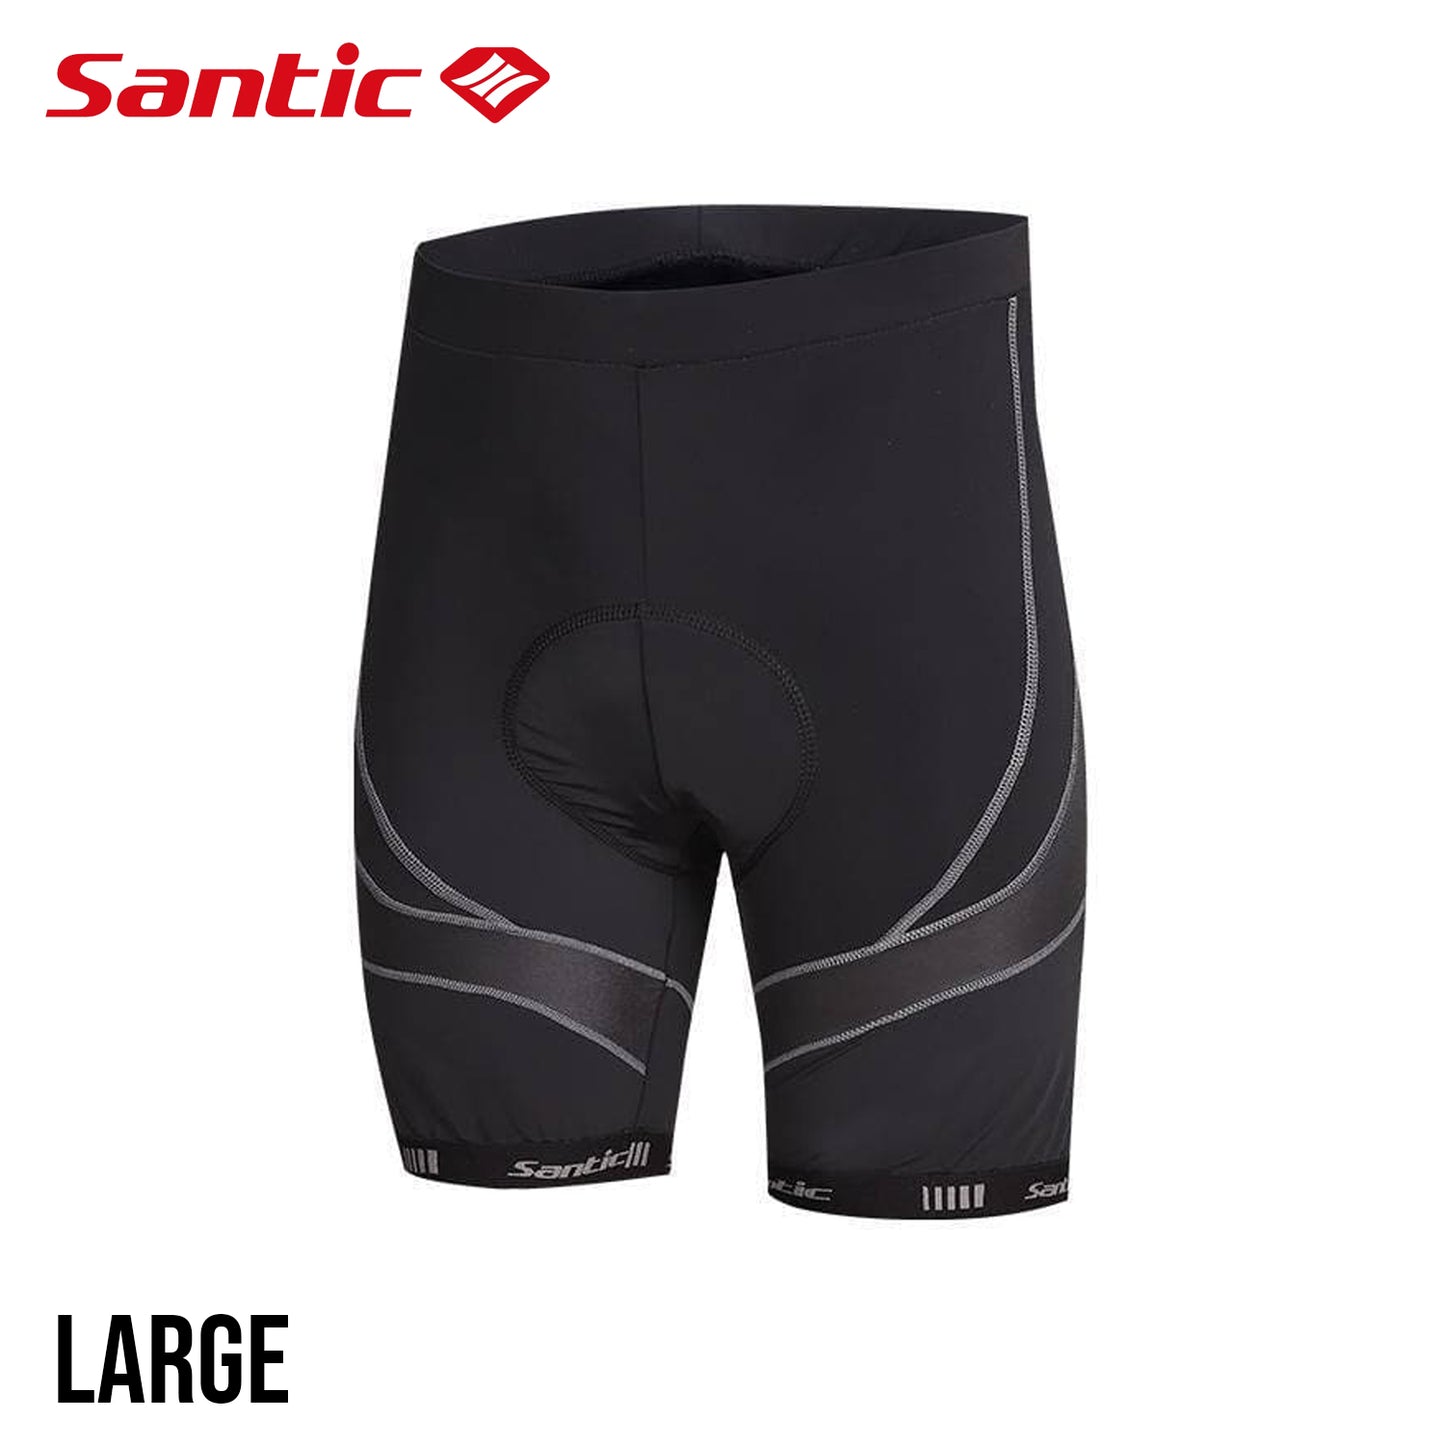 Santic Lightspeed Ⅱ Men's Spring Summer Cycling Shorts - Black